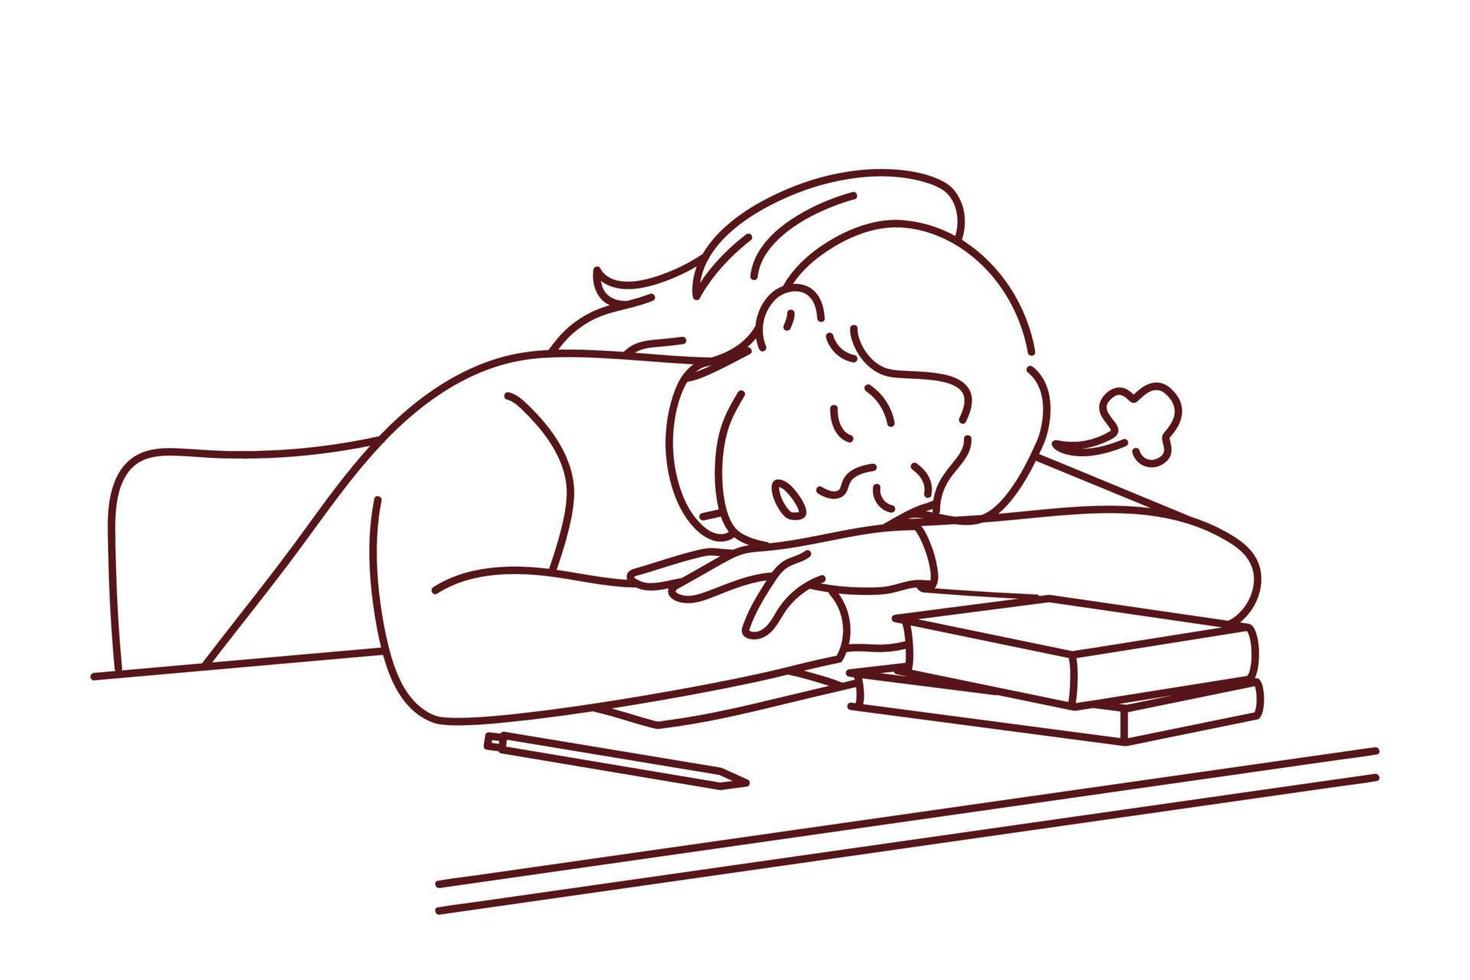 una joven estudiante cansada se queda dormida en el escritorio angustiada por estudiar. la niña exhausta duerme en la mesa sufre de agotamiento y fatiga aprendiendo. ilustración vectorial vector